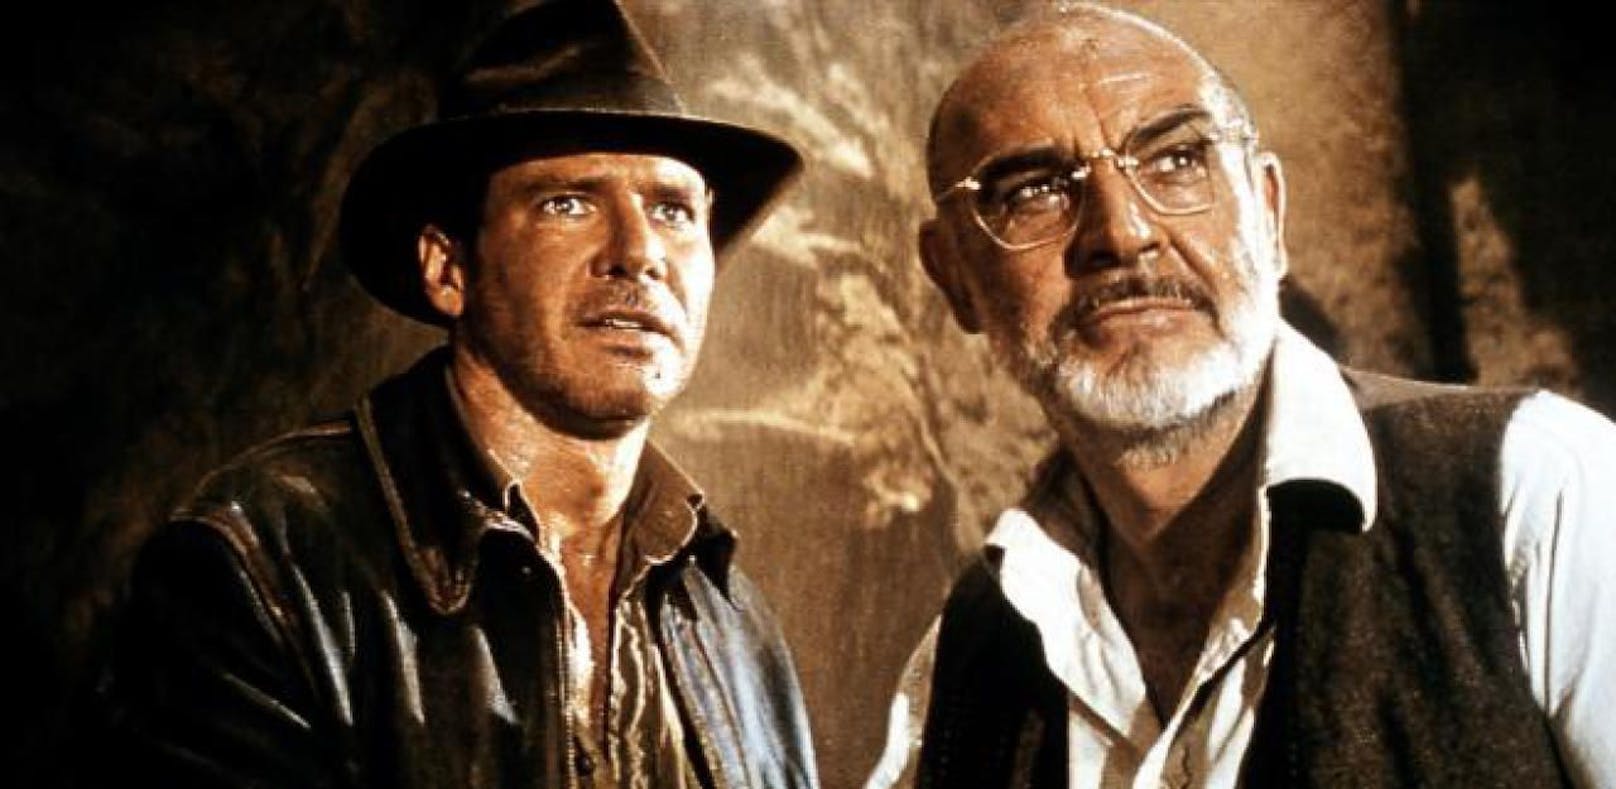 Indiana Jones und der letzte Kreuzzug